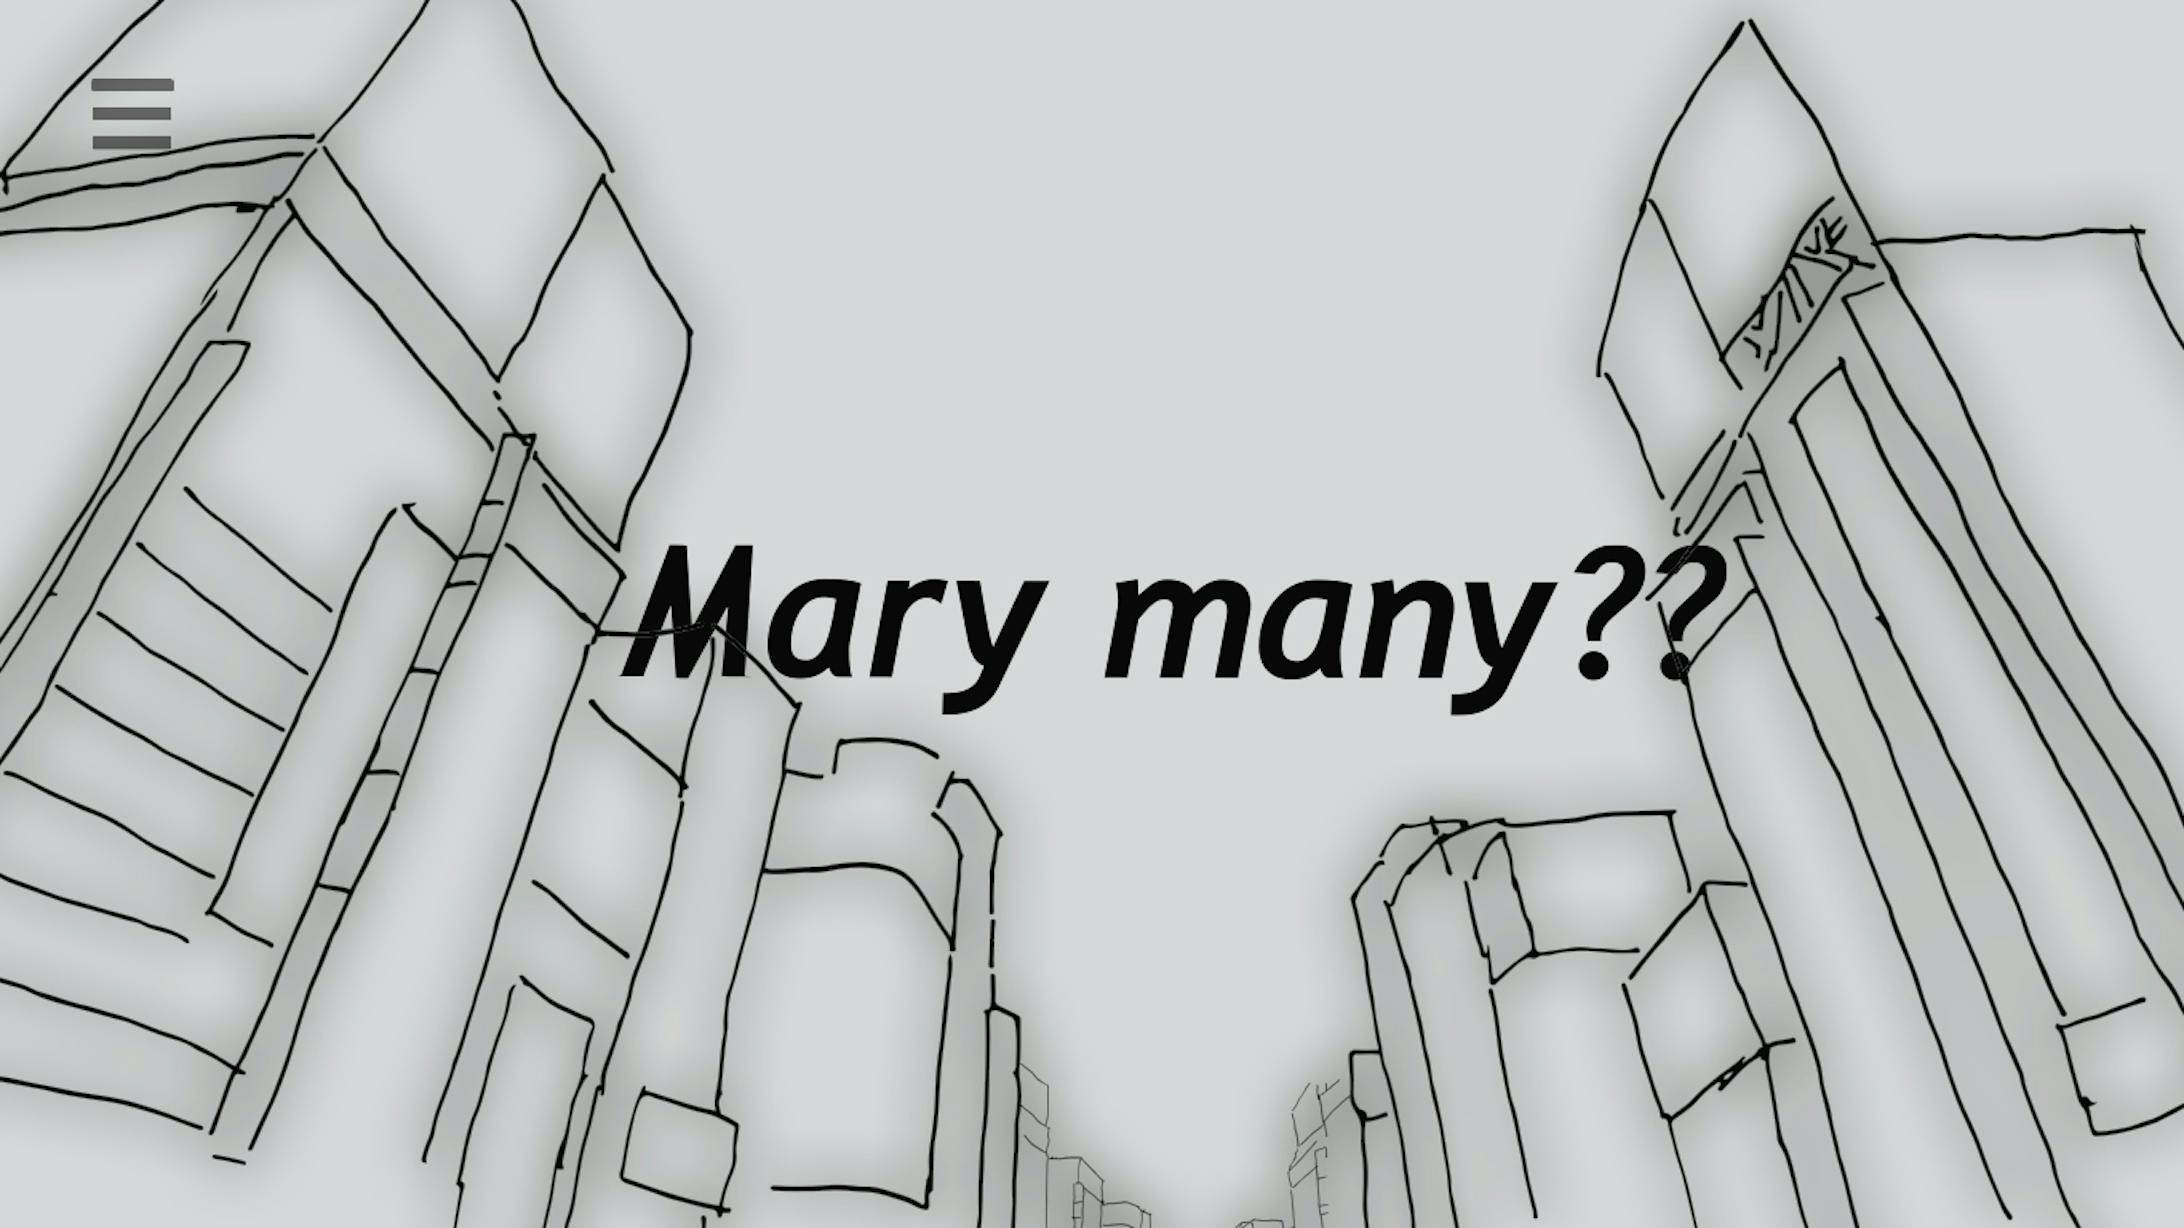 Mary many?? -5